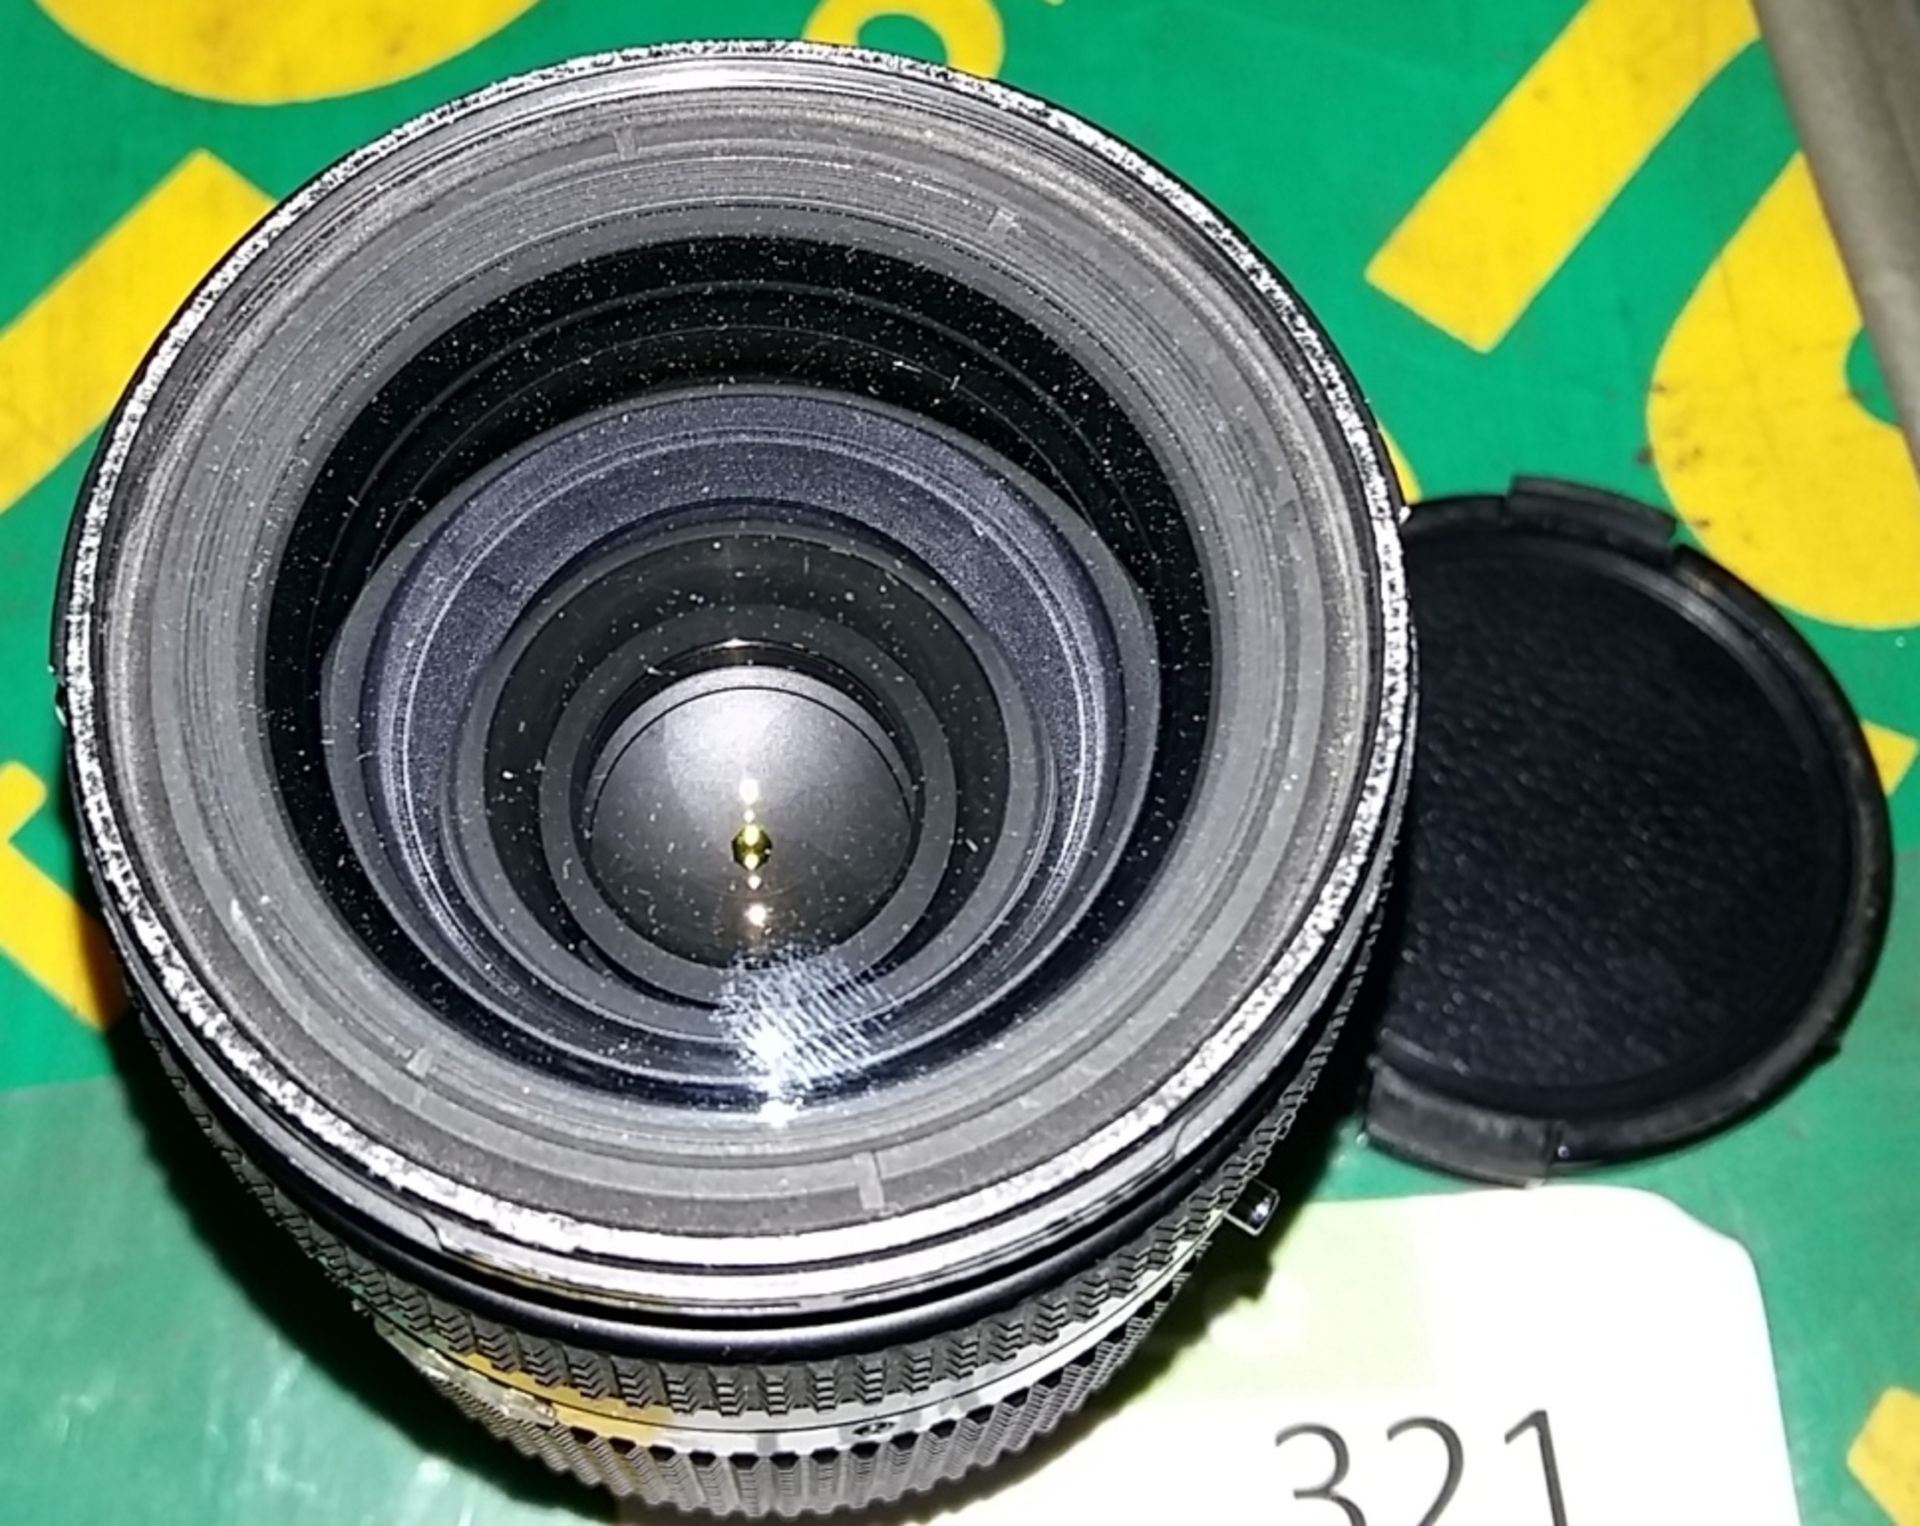 Nikon AF Nikkor 35-70mm 1:2.8D camera lens - Image 2 of 2